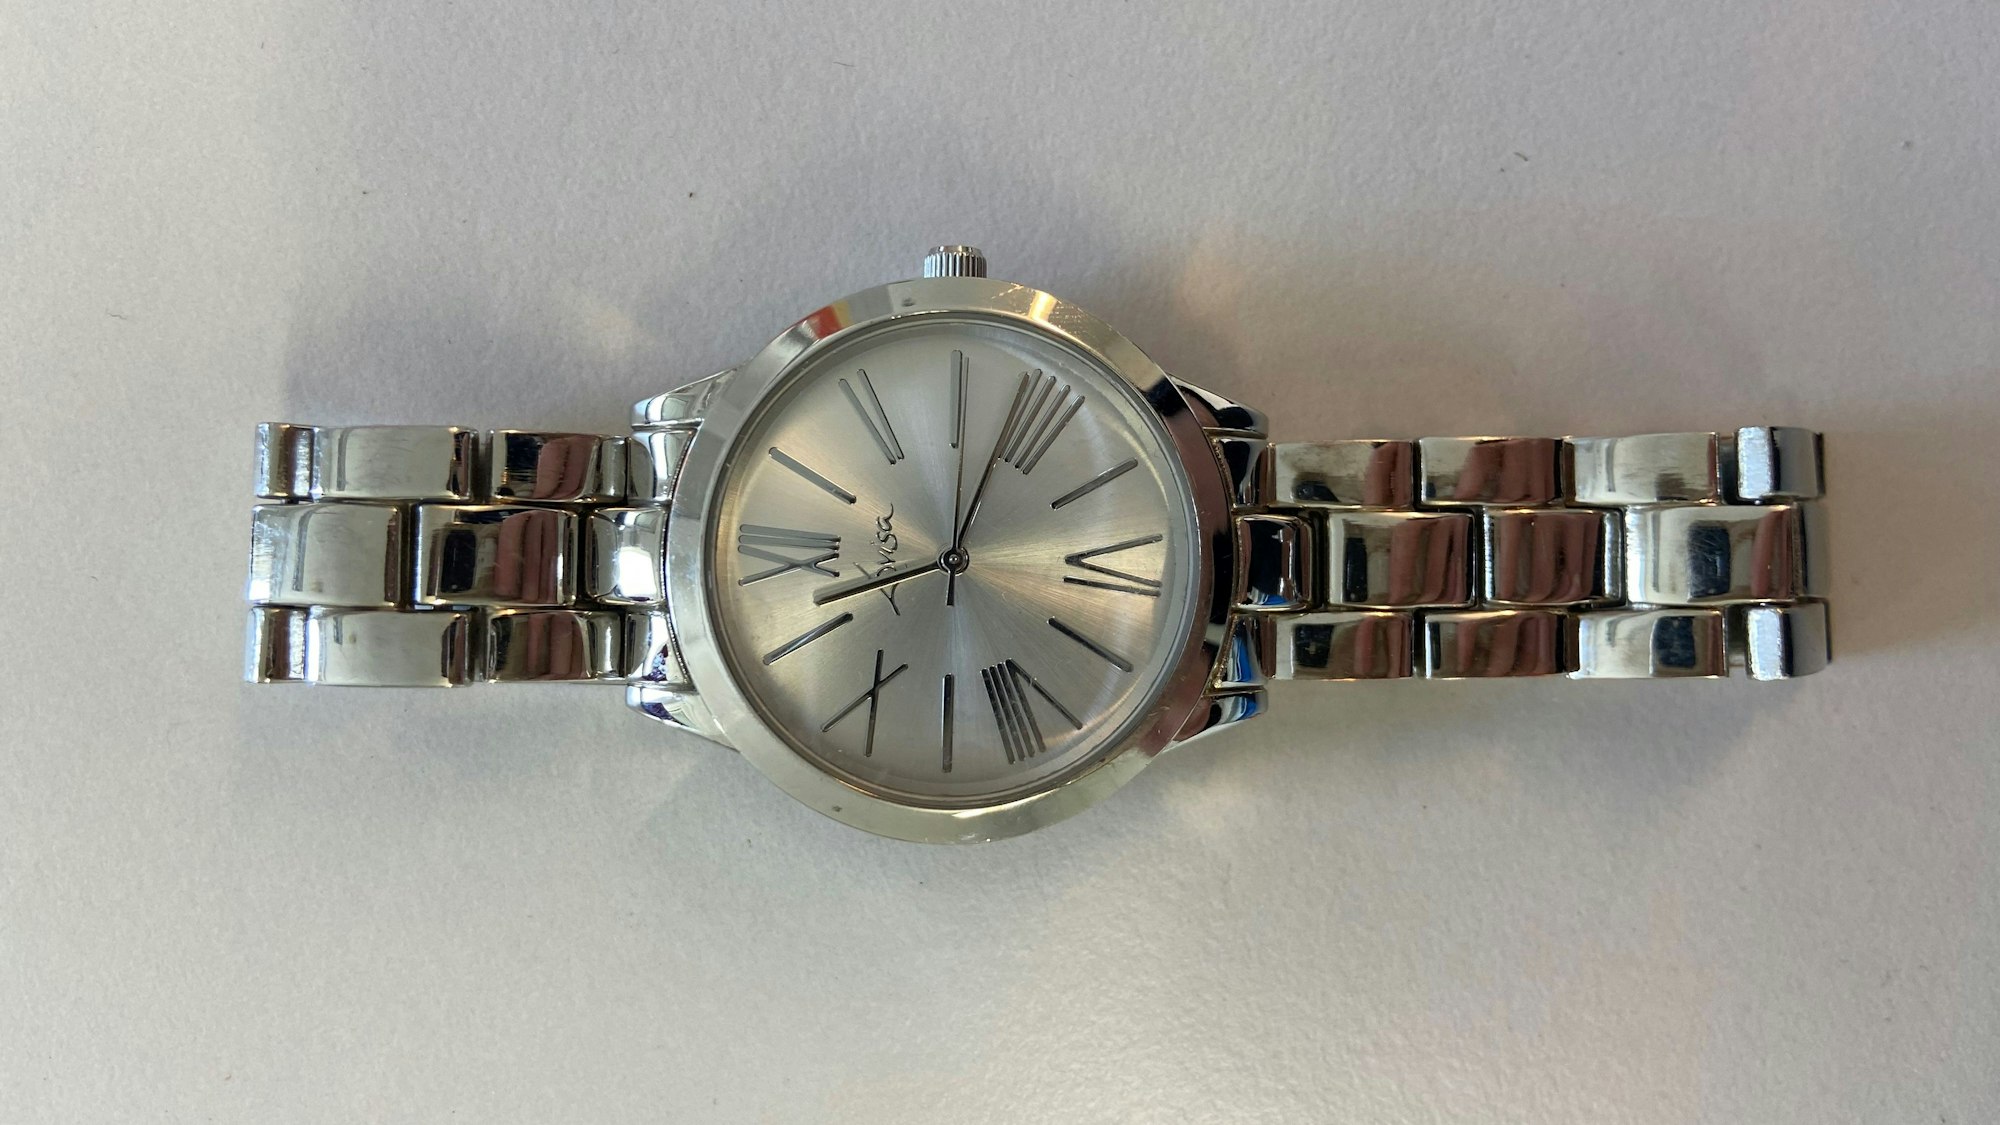 Eine silberne Armbanduhr der Marke Lovisa auf weißem Grund: Die Uhr ist aus einem Krankenhaus gestohlen worden.